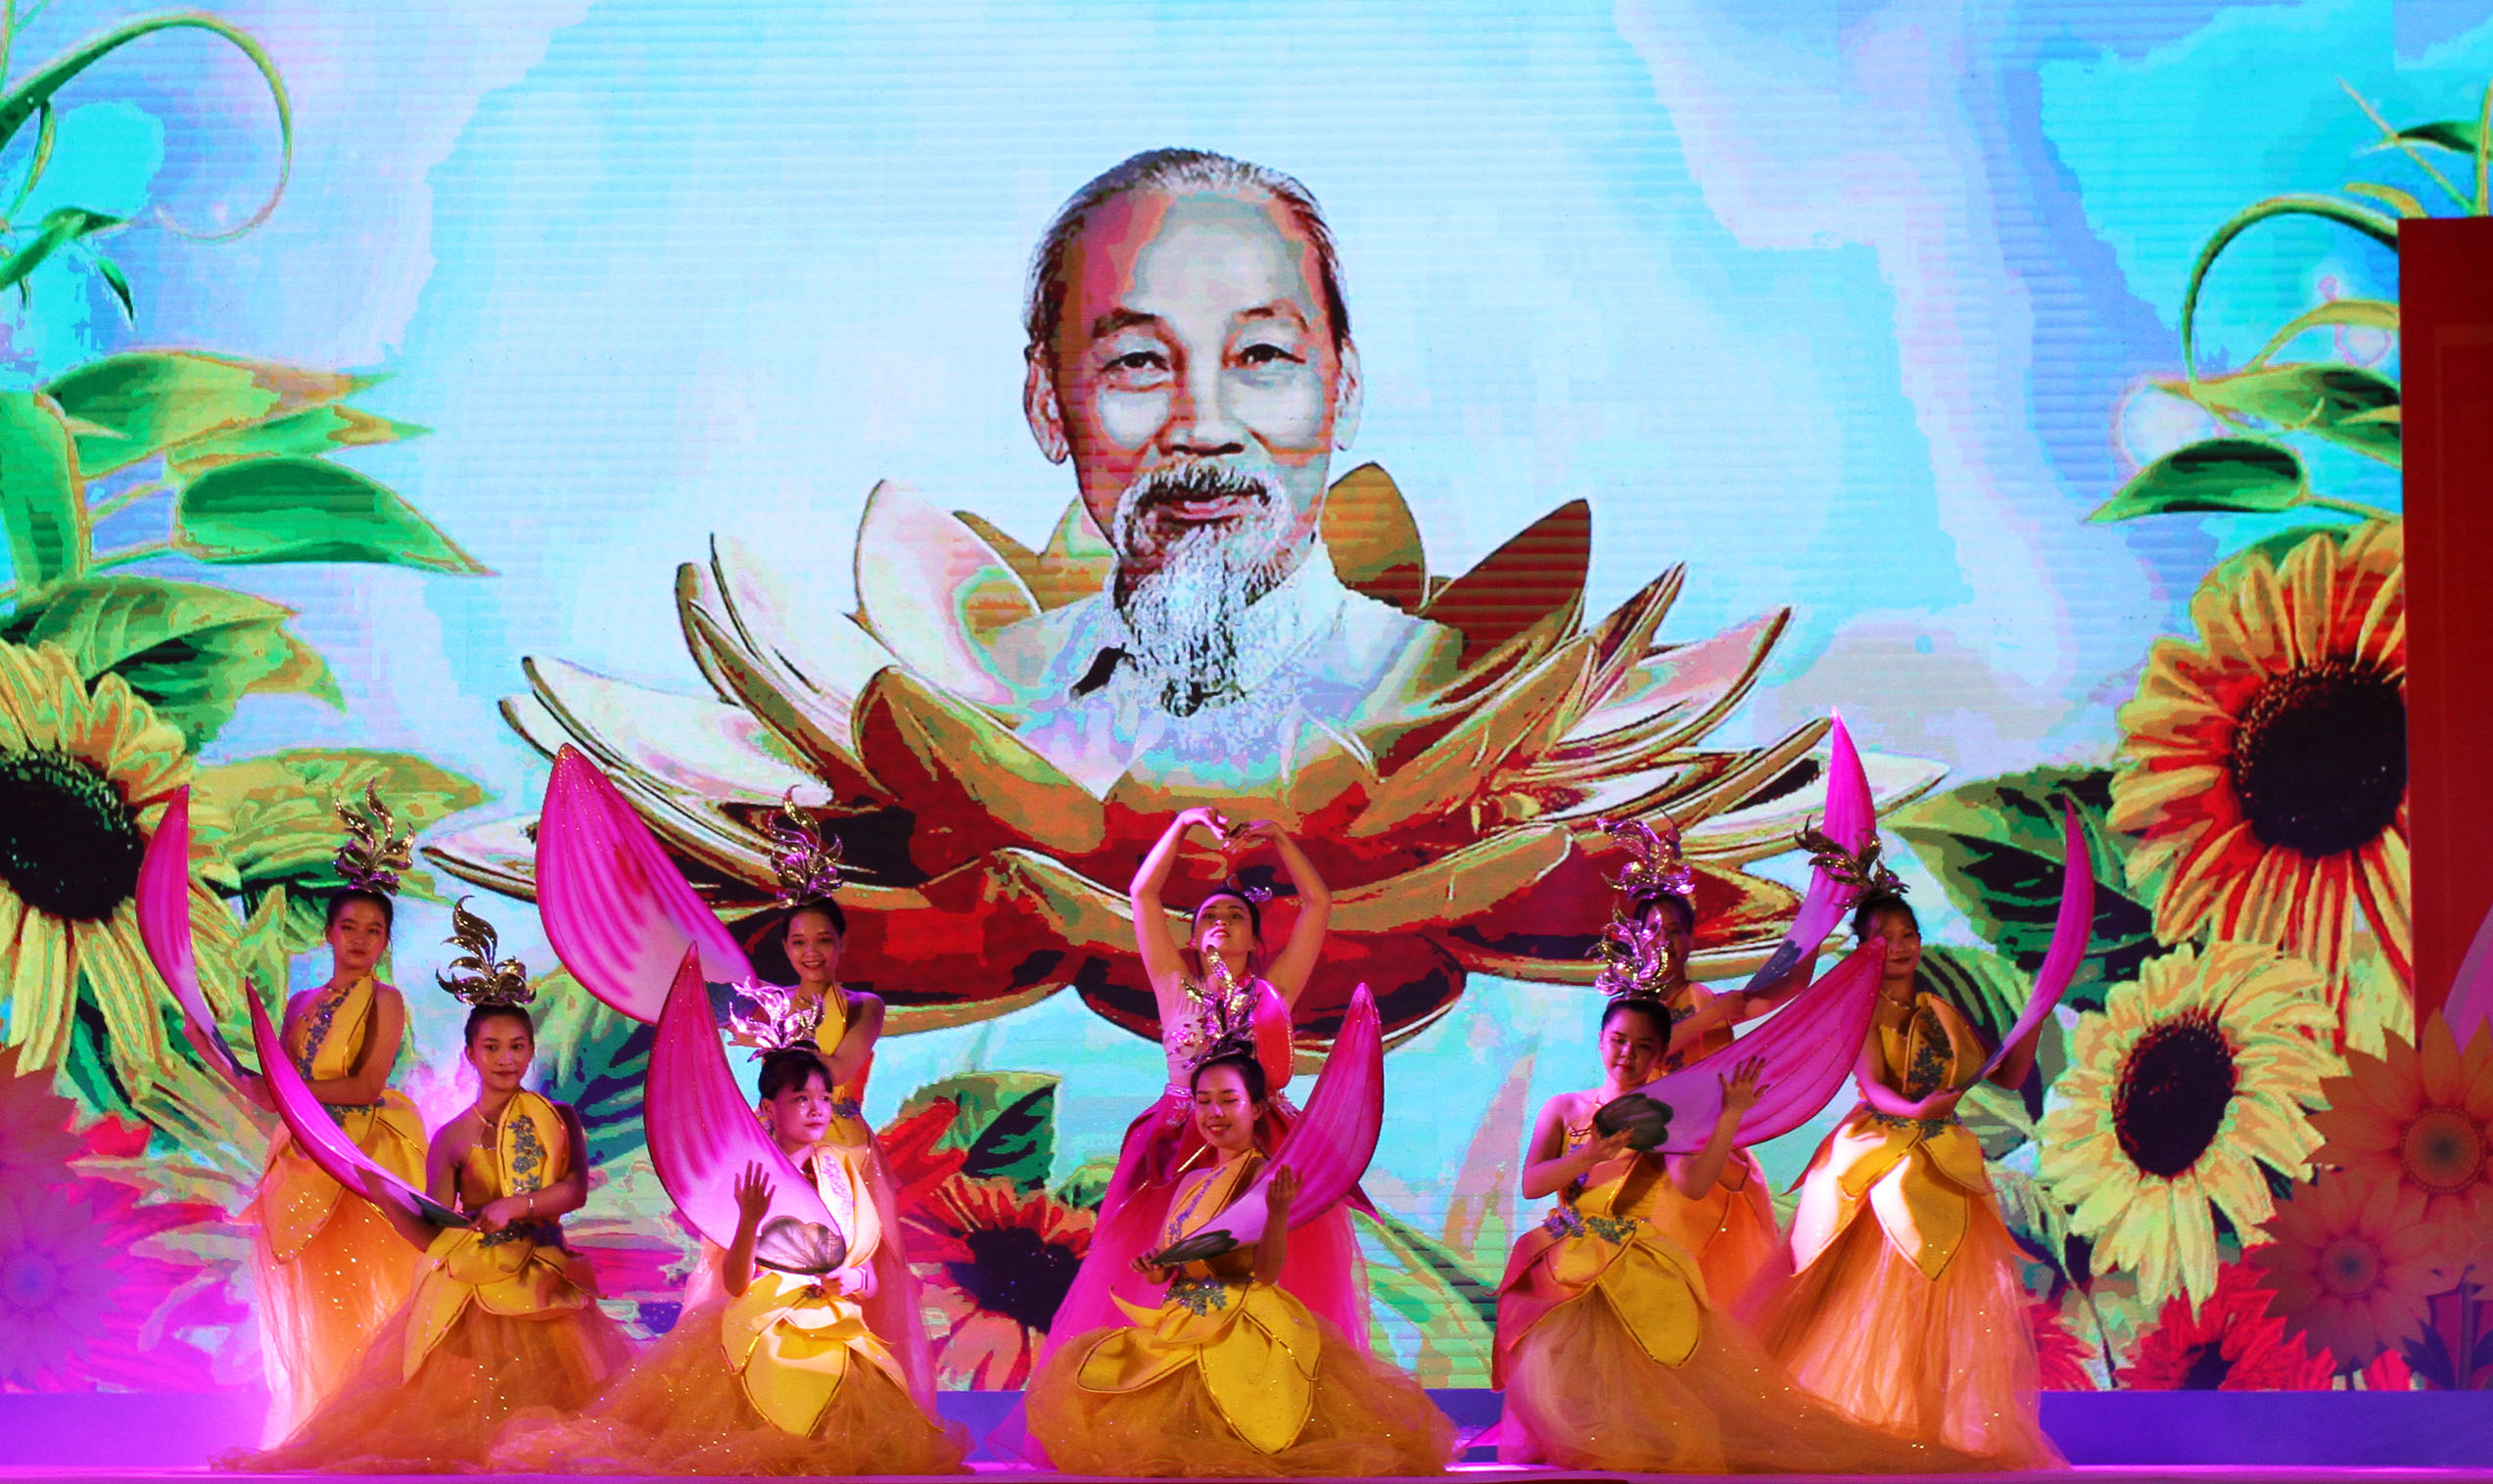 Tỉnh đoàn Quảng Ninh đã tổ chức chương trình nghệ thuật chào mừng Đại hội Đảng bộ tỉnh lần thứ XV, nhiệm kỳ 2020 – 2025 